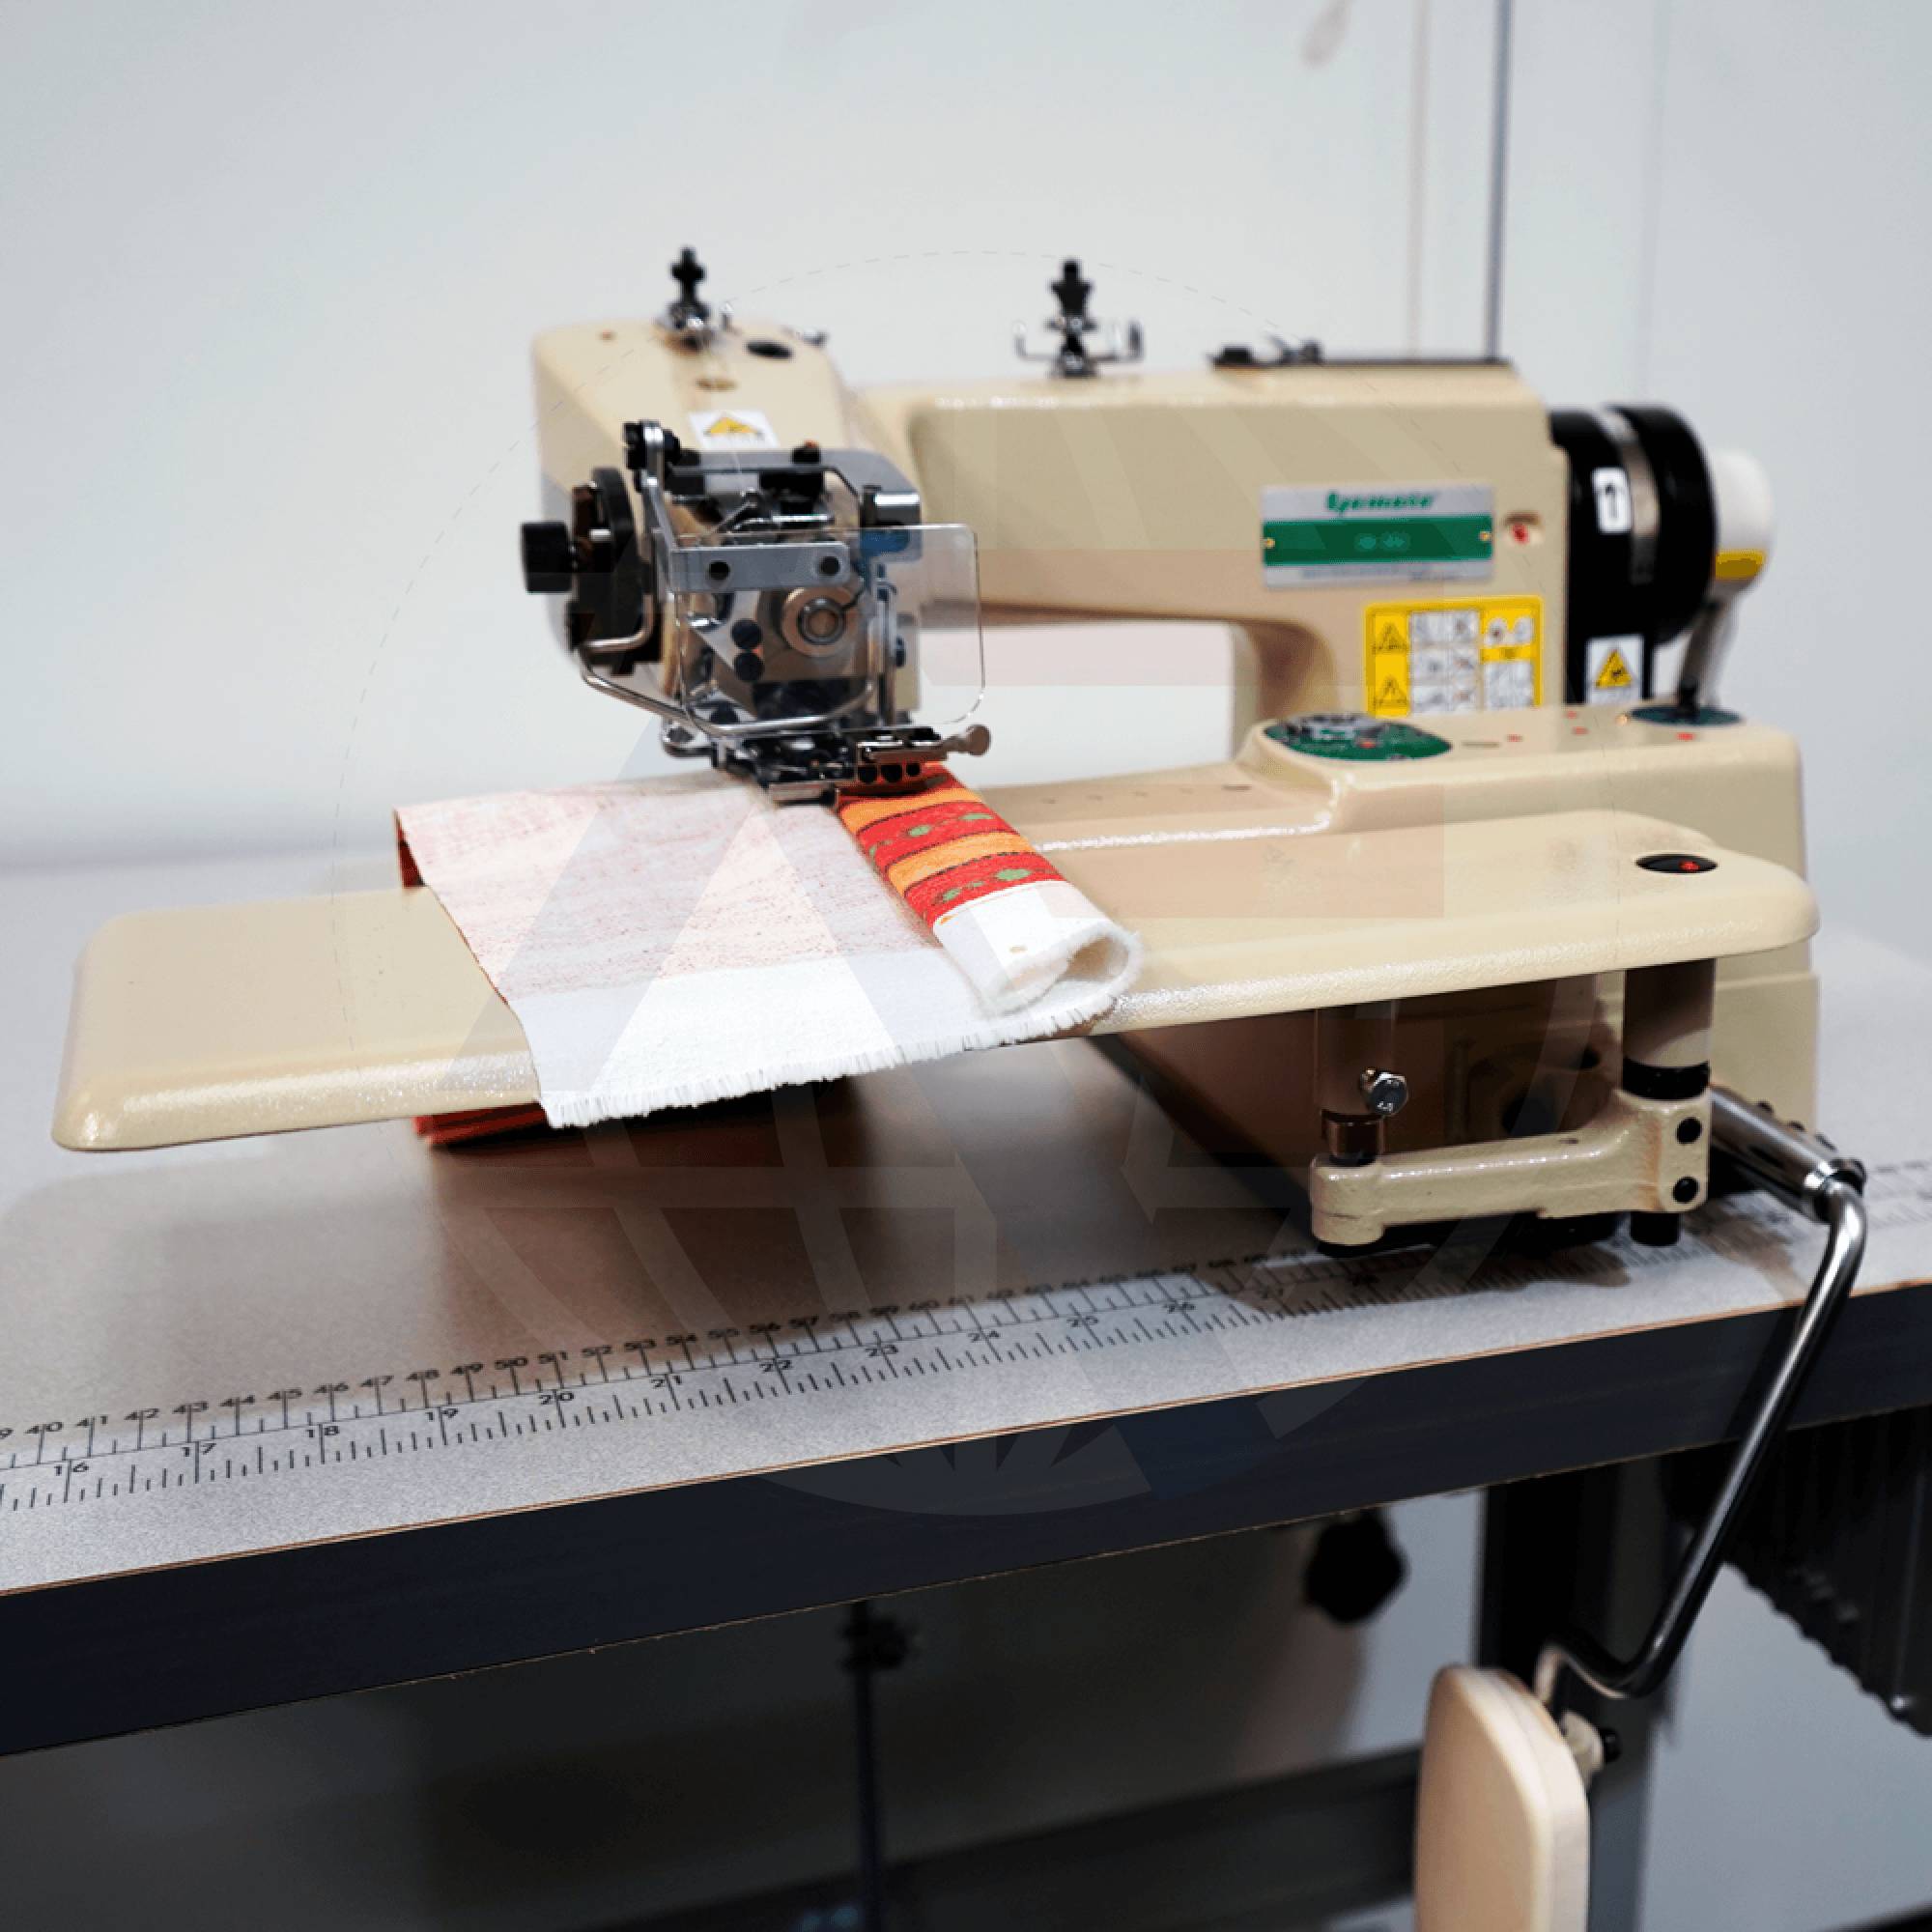 Yamato Cm-352 Blindstitch Machine Sewing Machines